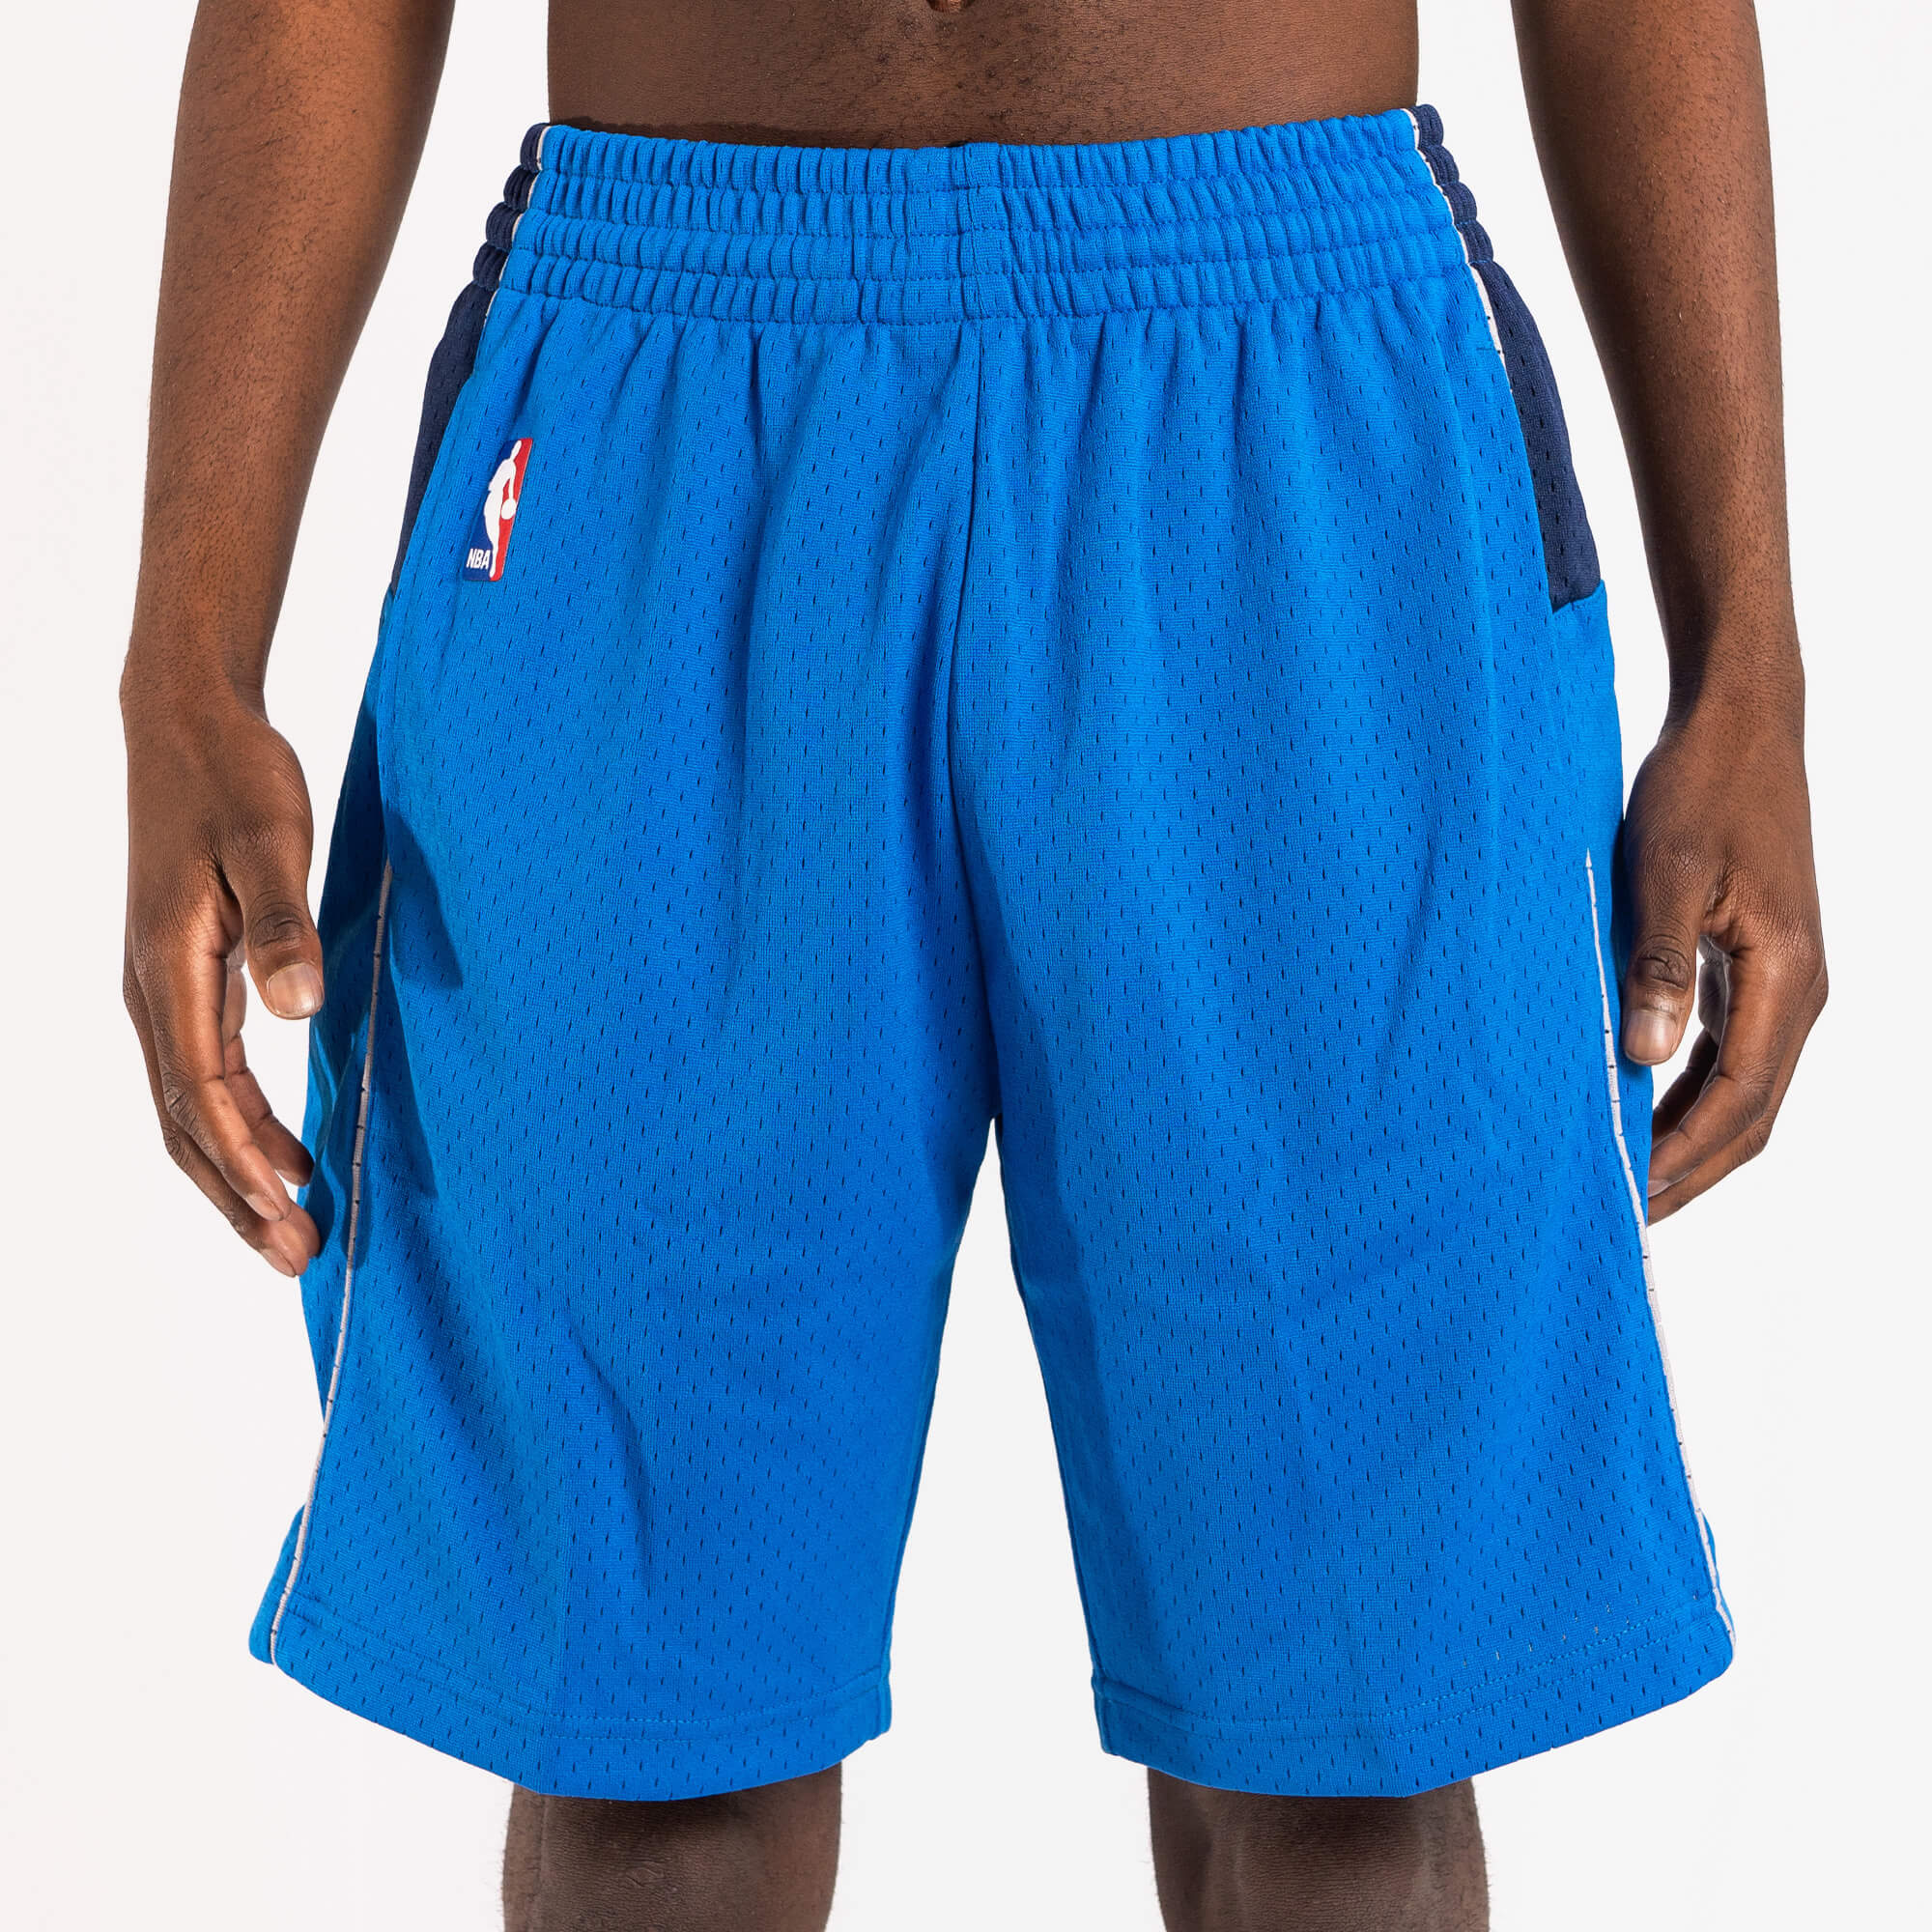 NBA, Shorts, Vintage Nba Dallas Mavericks Mens Basketball Shorts Size Xl